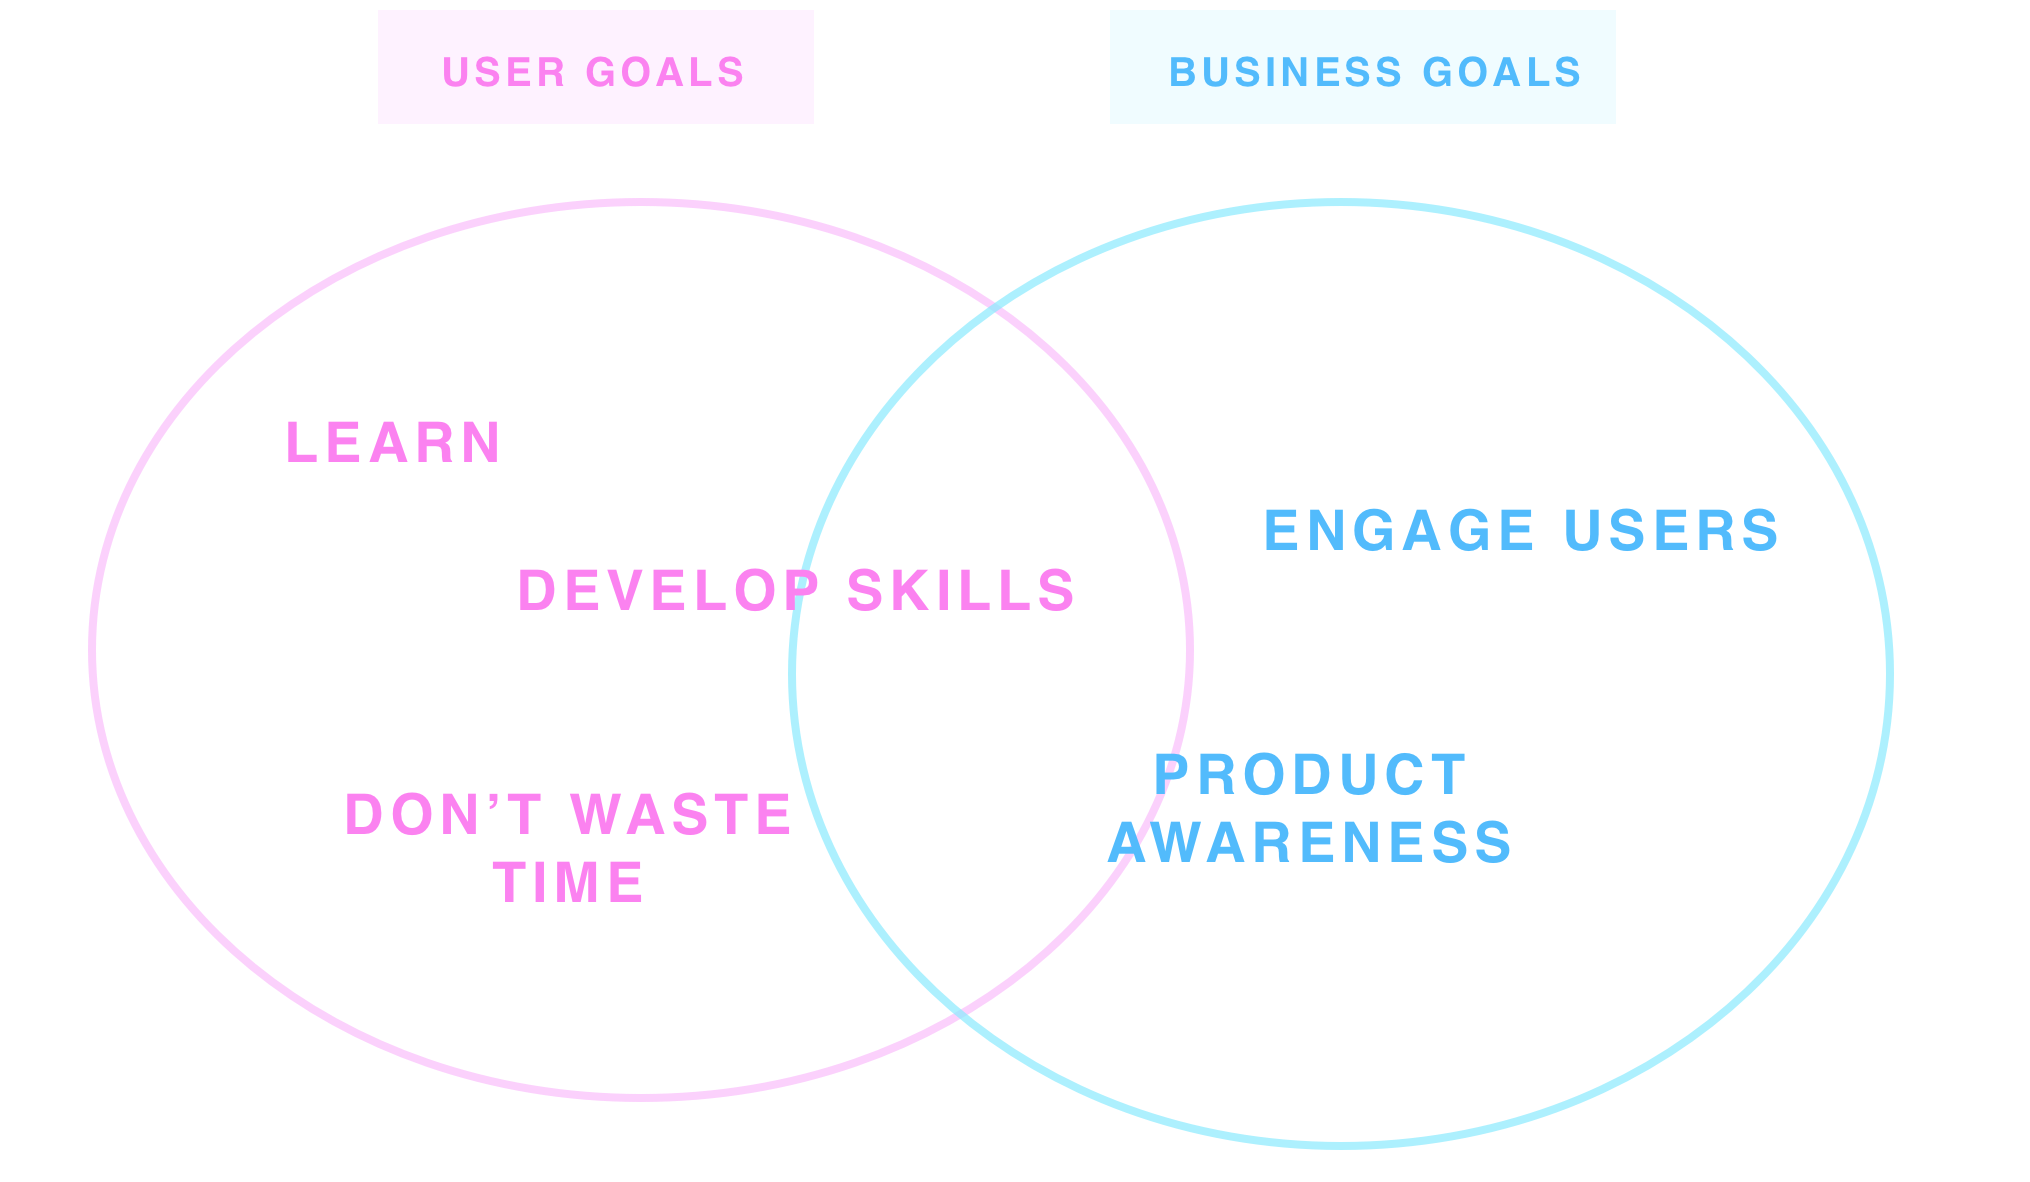 User goals and business goals